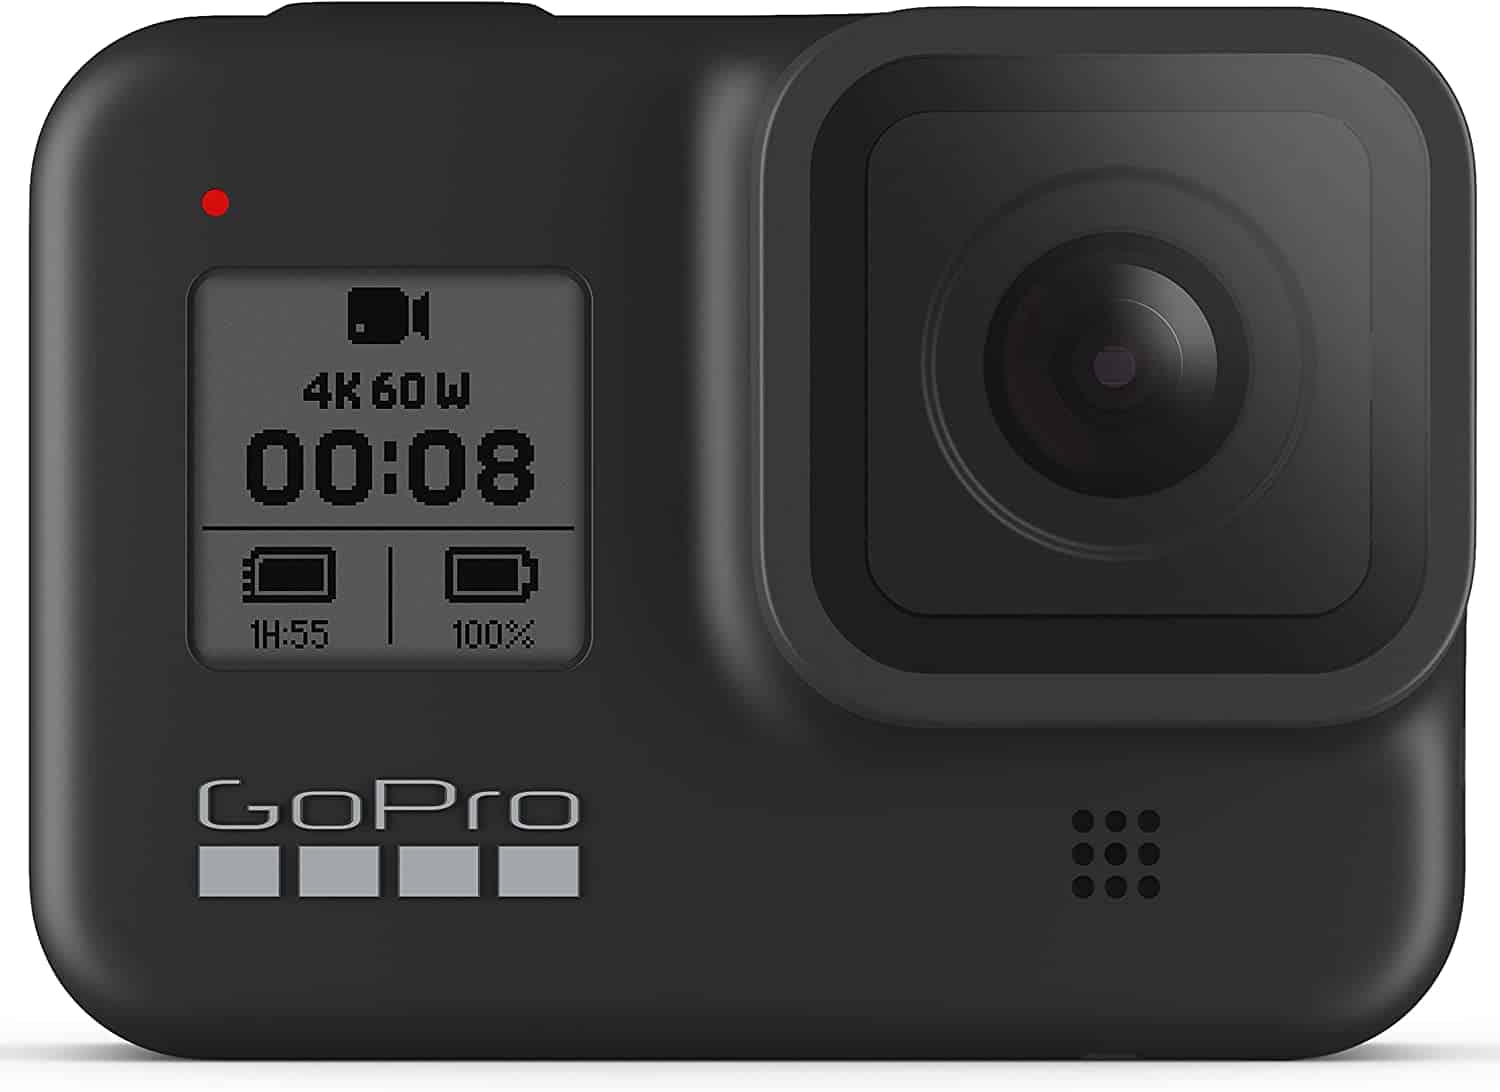 Beste budget GoPro voor stop motion: GoPro HERO8 Black